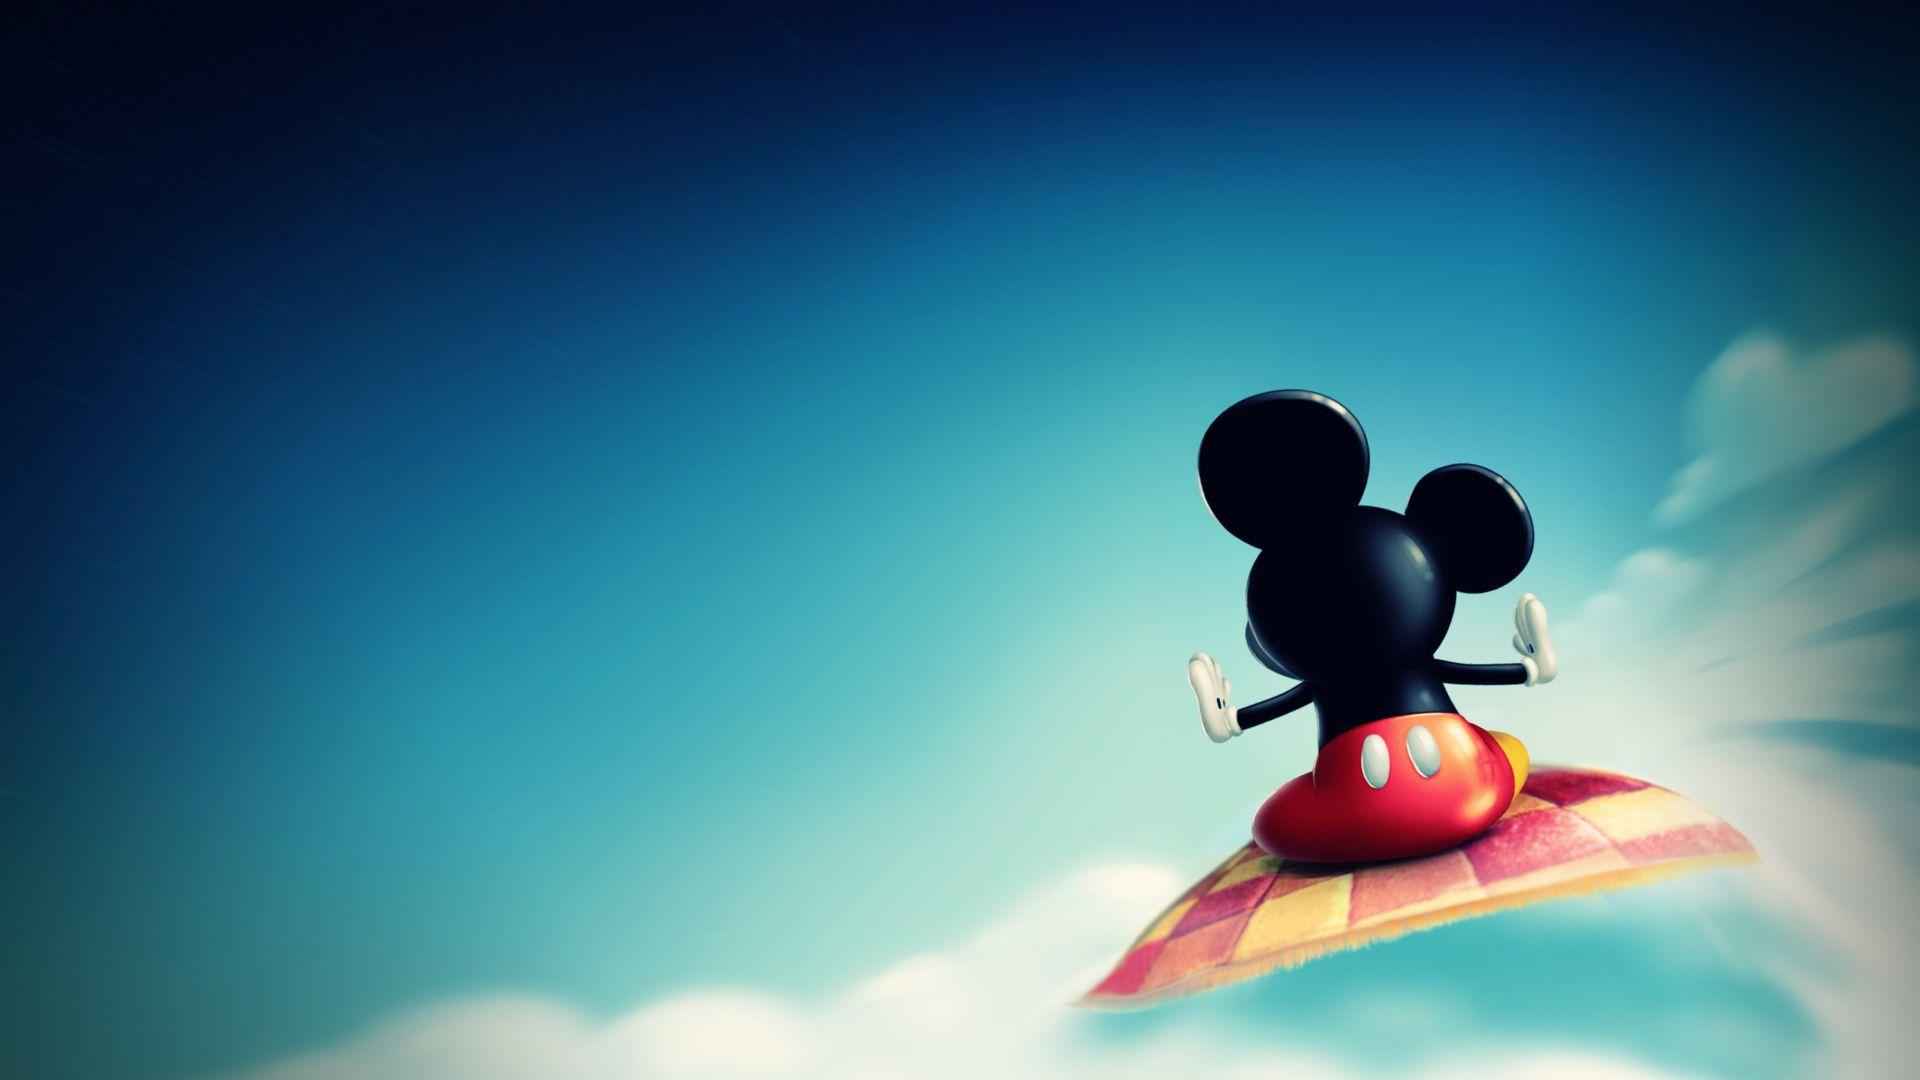 Mickey Mouse HD wallpaper. HD Wallpaper. Disney in 2019